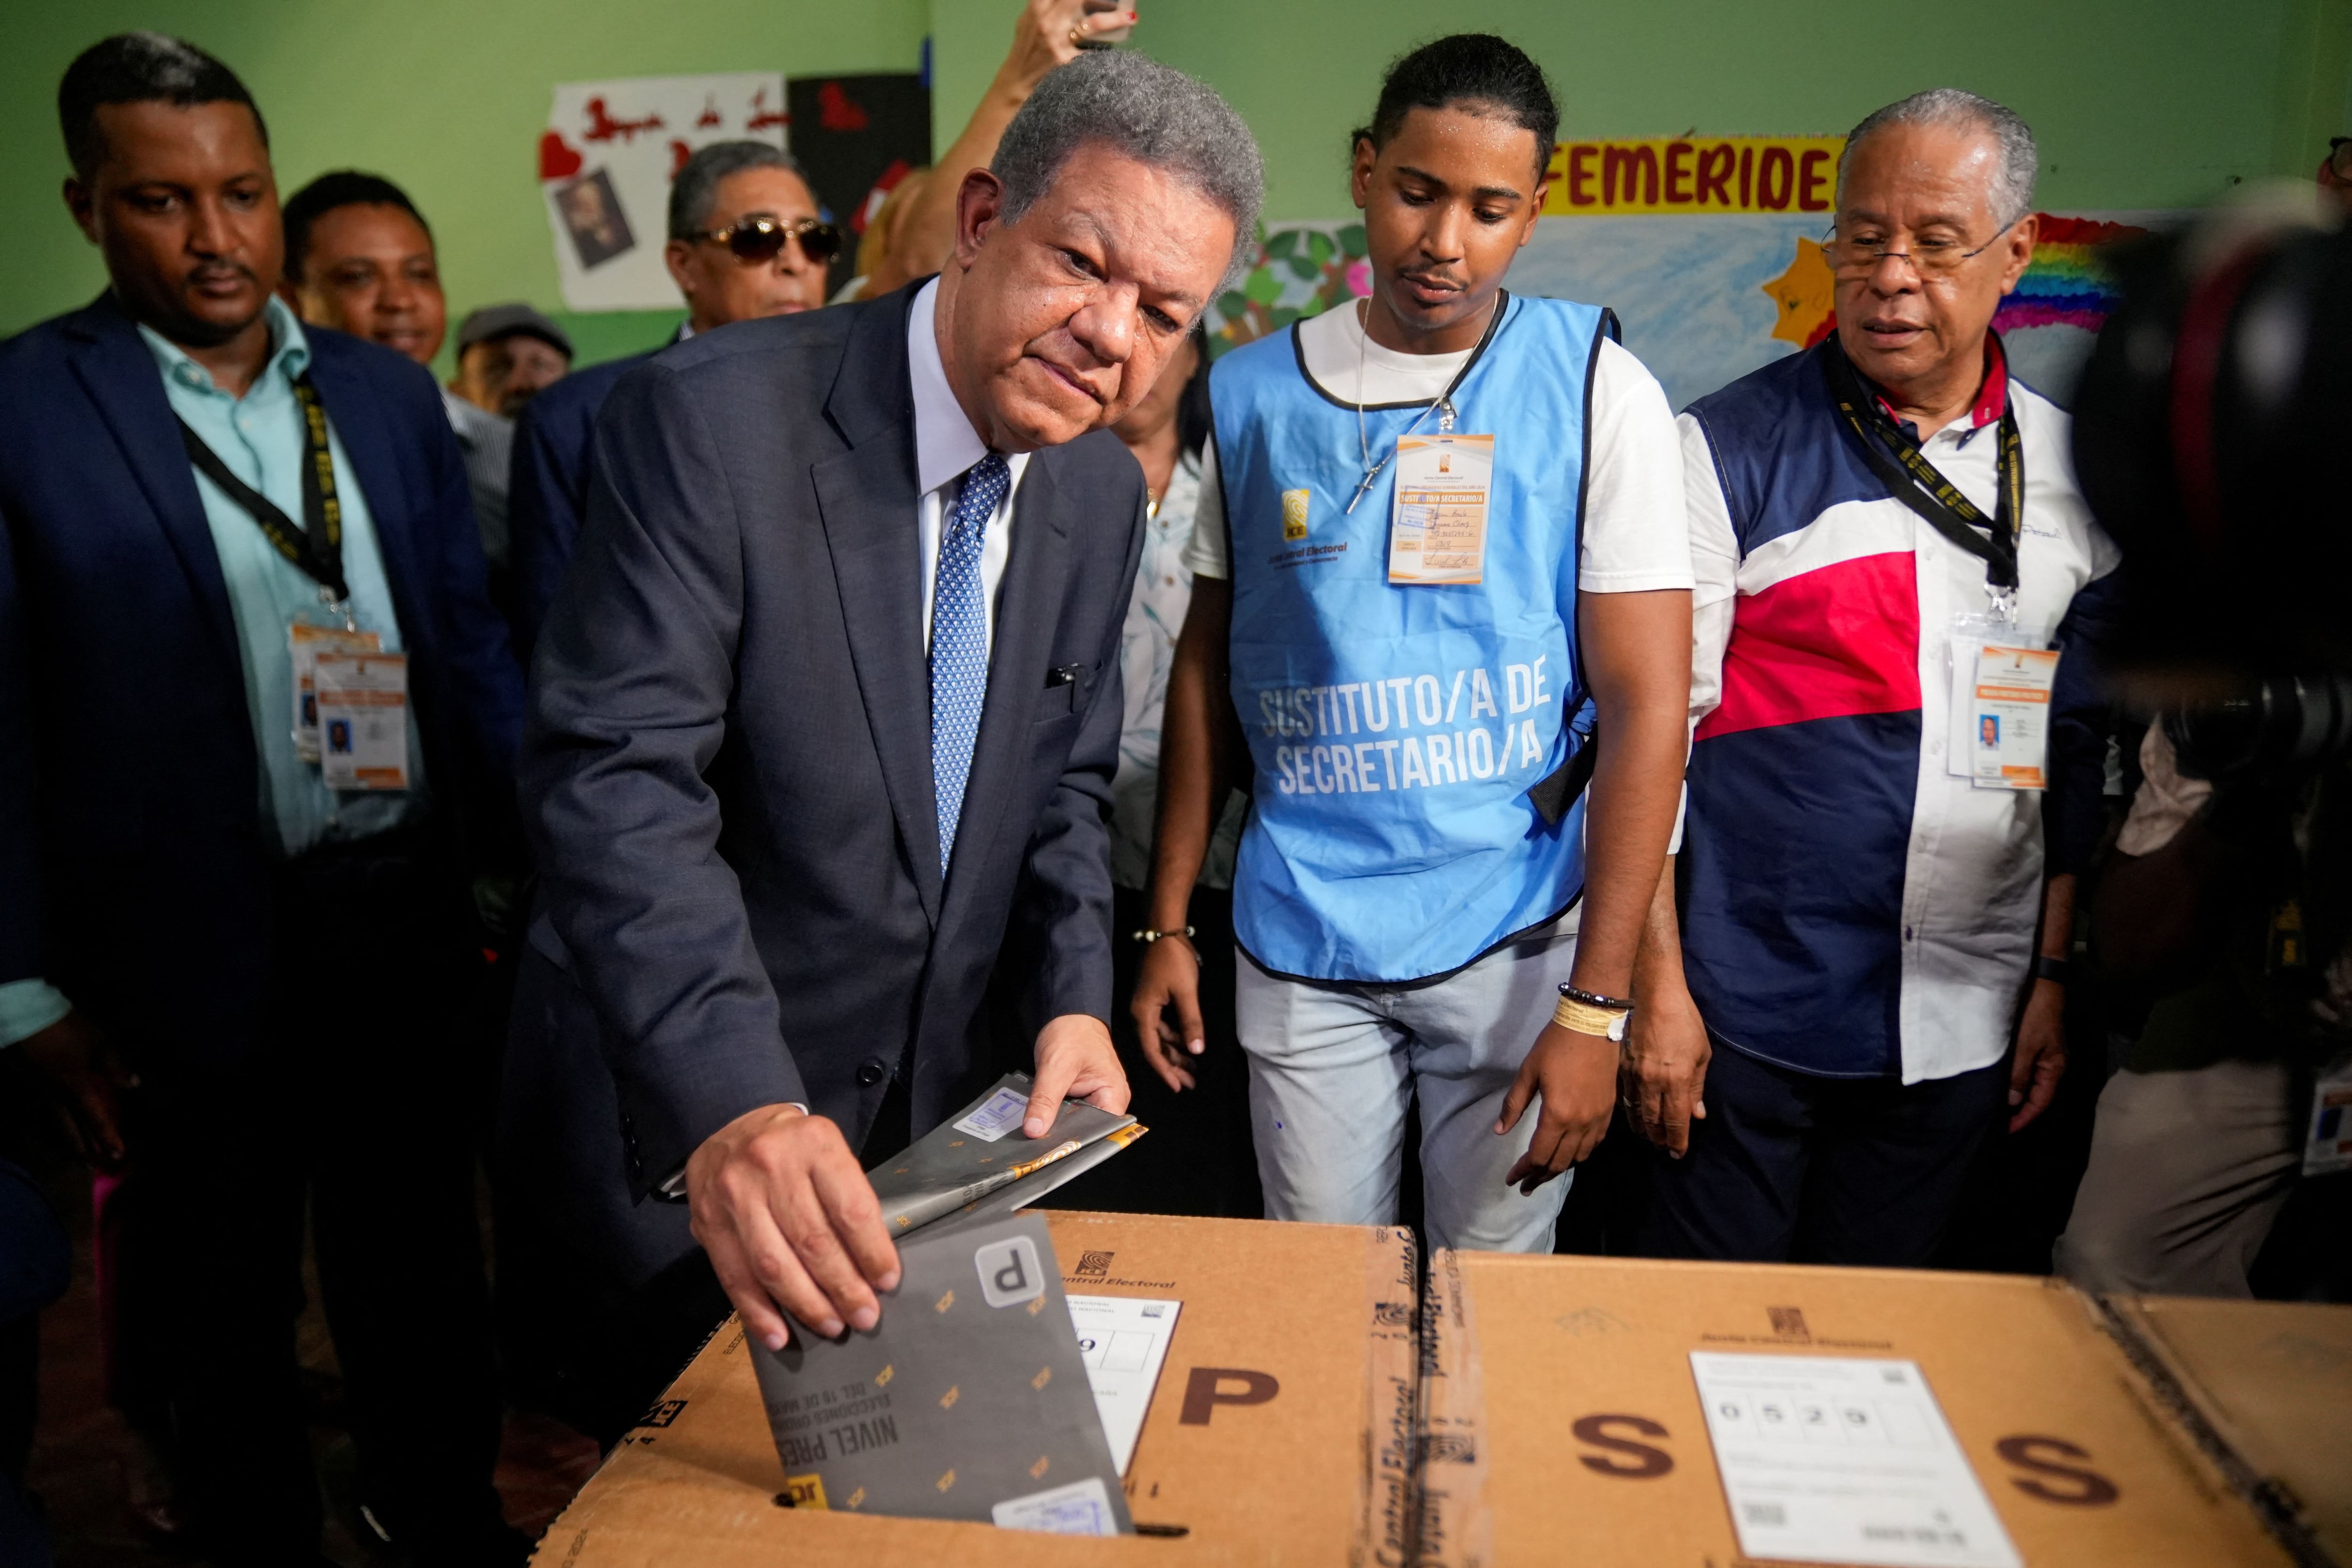 El candidato presidencial del partido Fuerza Popular Leonel Fernández vota el día de las elecciones presidenciales en Santo Domingo, República Dominicana, el 19 de mayo de 2024. REUTERS/Fran Afonso